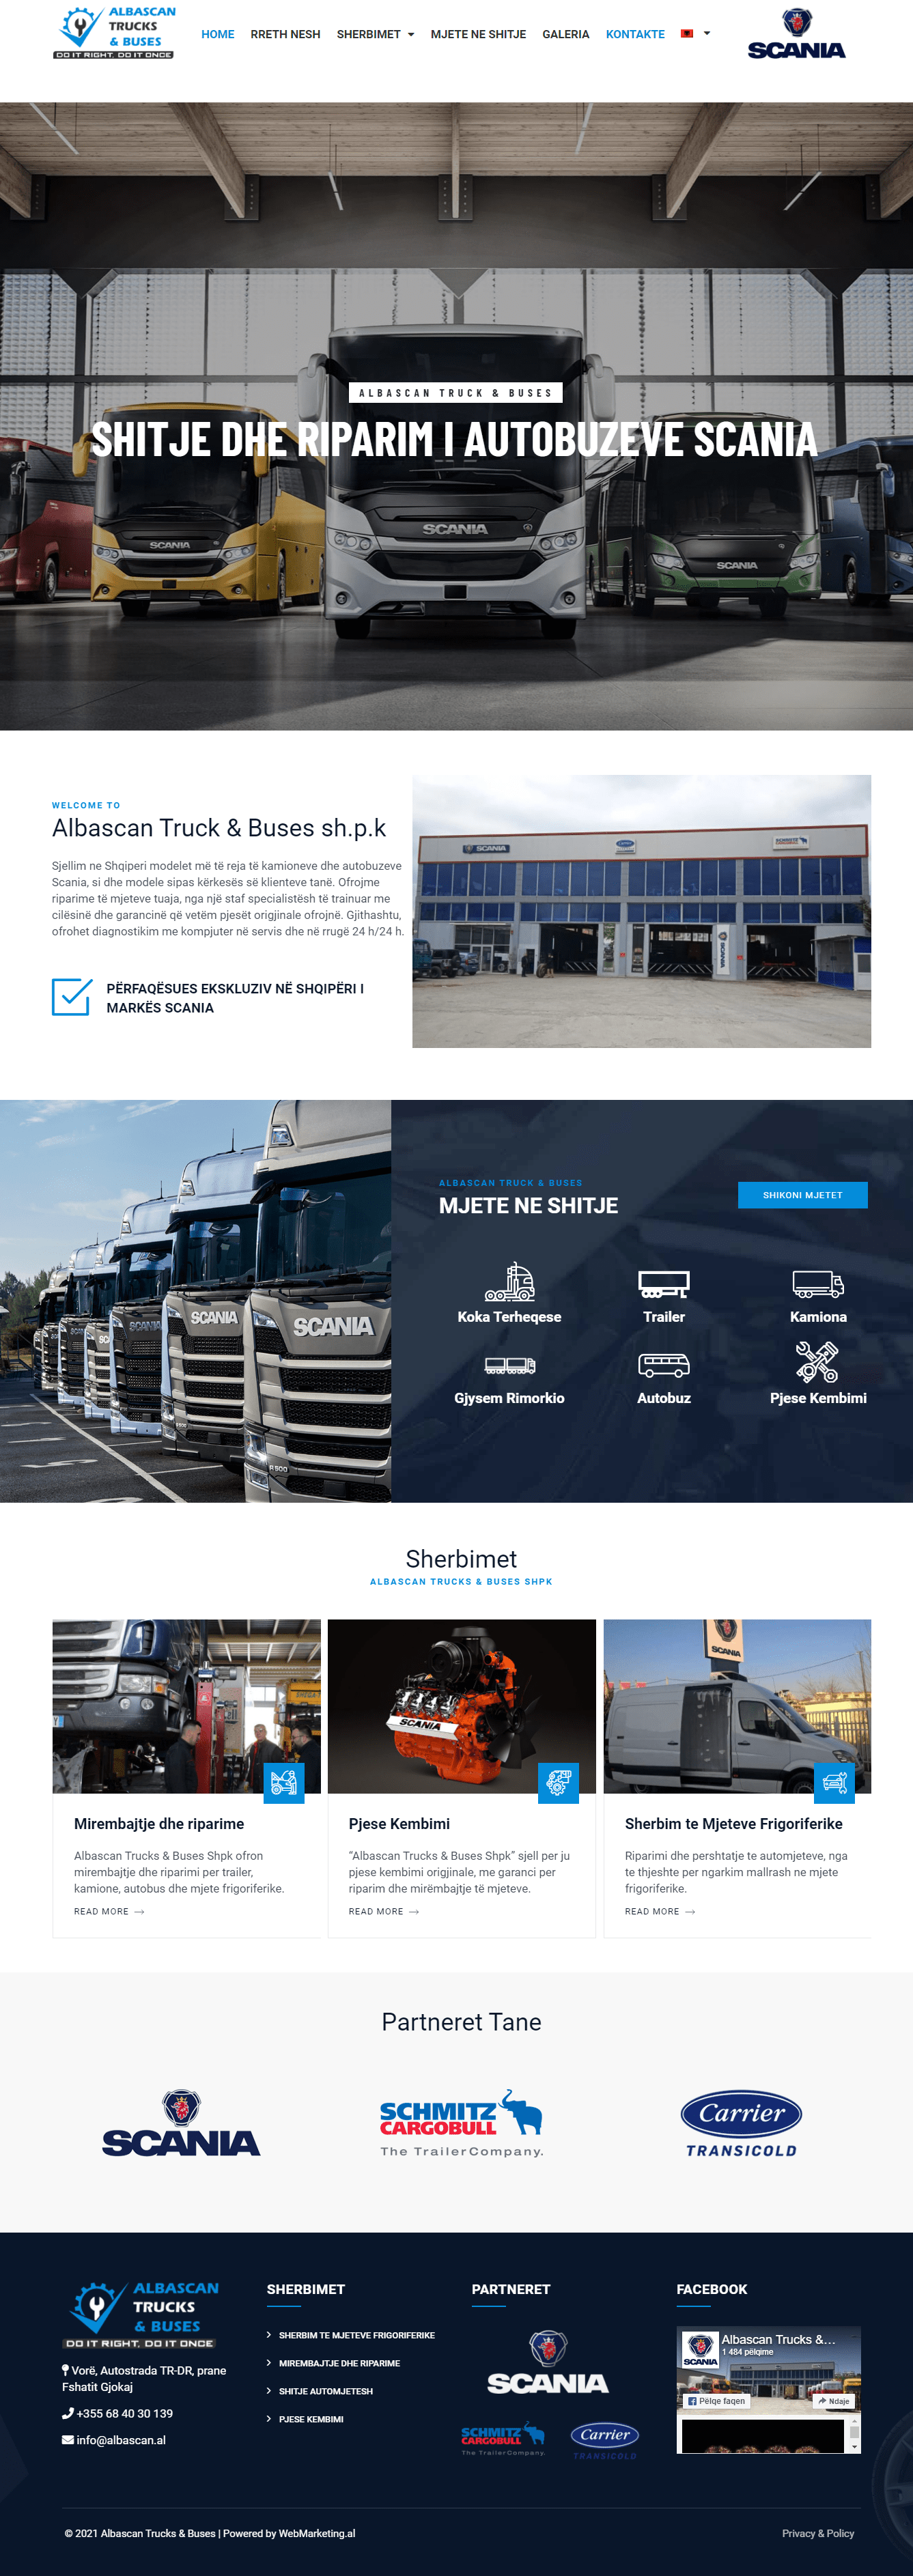 //webmarketing.al/wp-content/uploads/2021/03/Albascan-Trucks-Buses-min.png